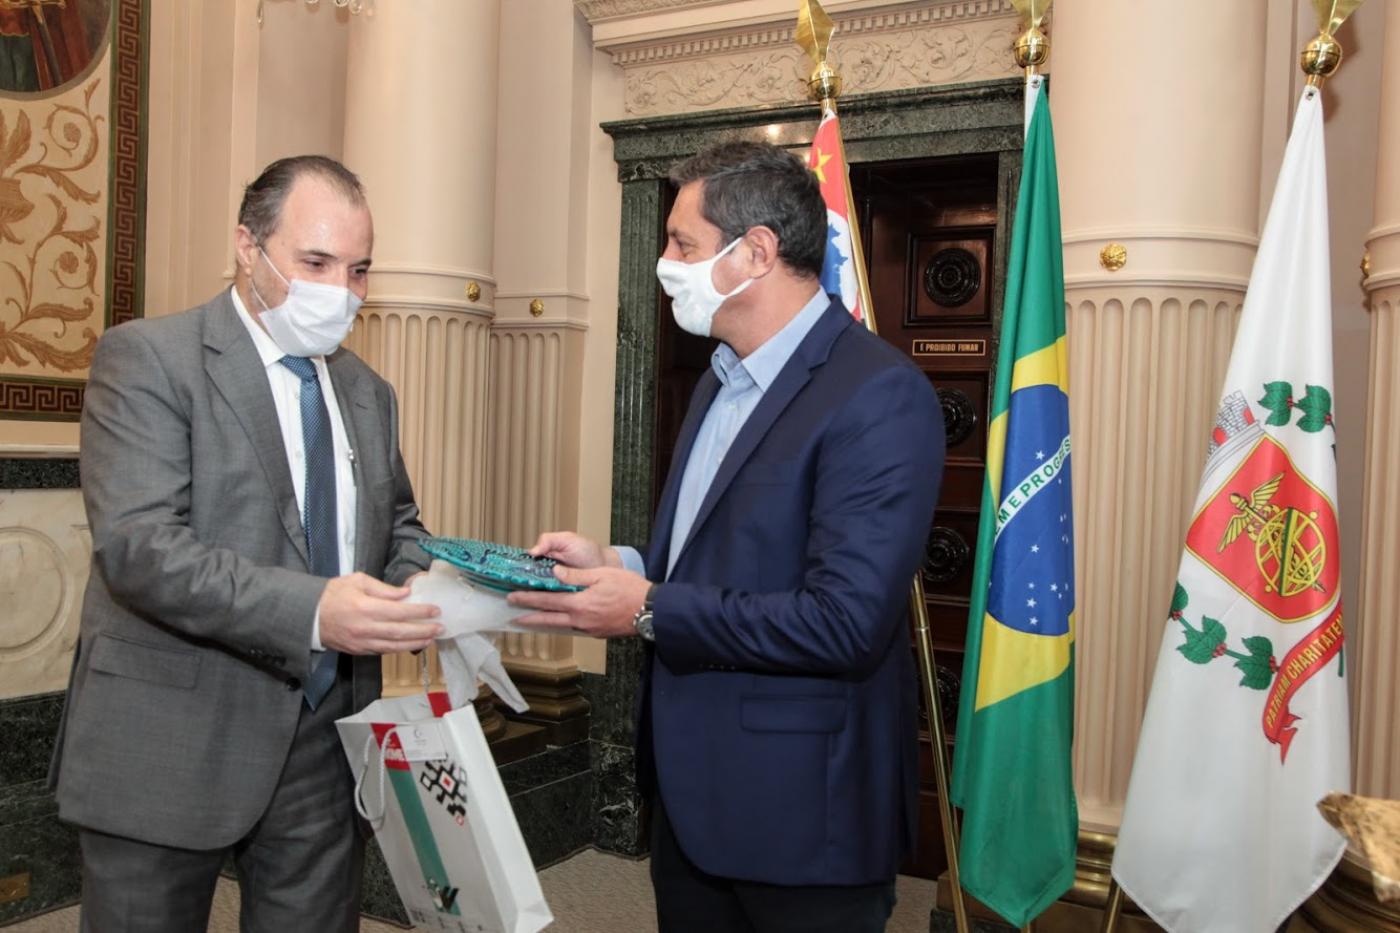 O cônsul à esquerda e o prefeito à direita. Ambos estão em pé, trocando presentes, à frente das bandeiras de São Paulo, Brasil e Santos. #paratodosverem